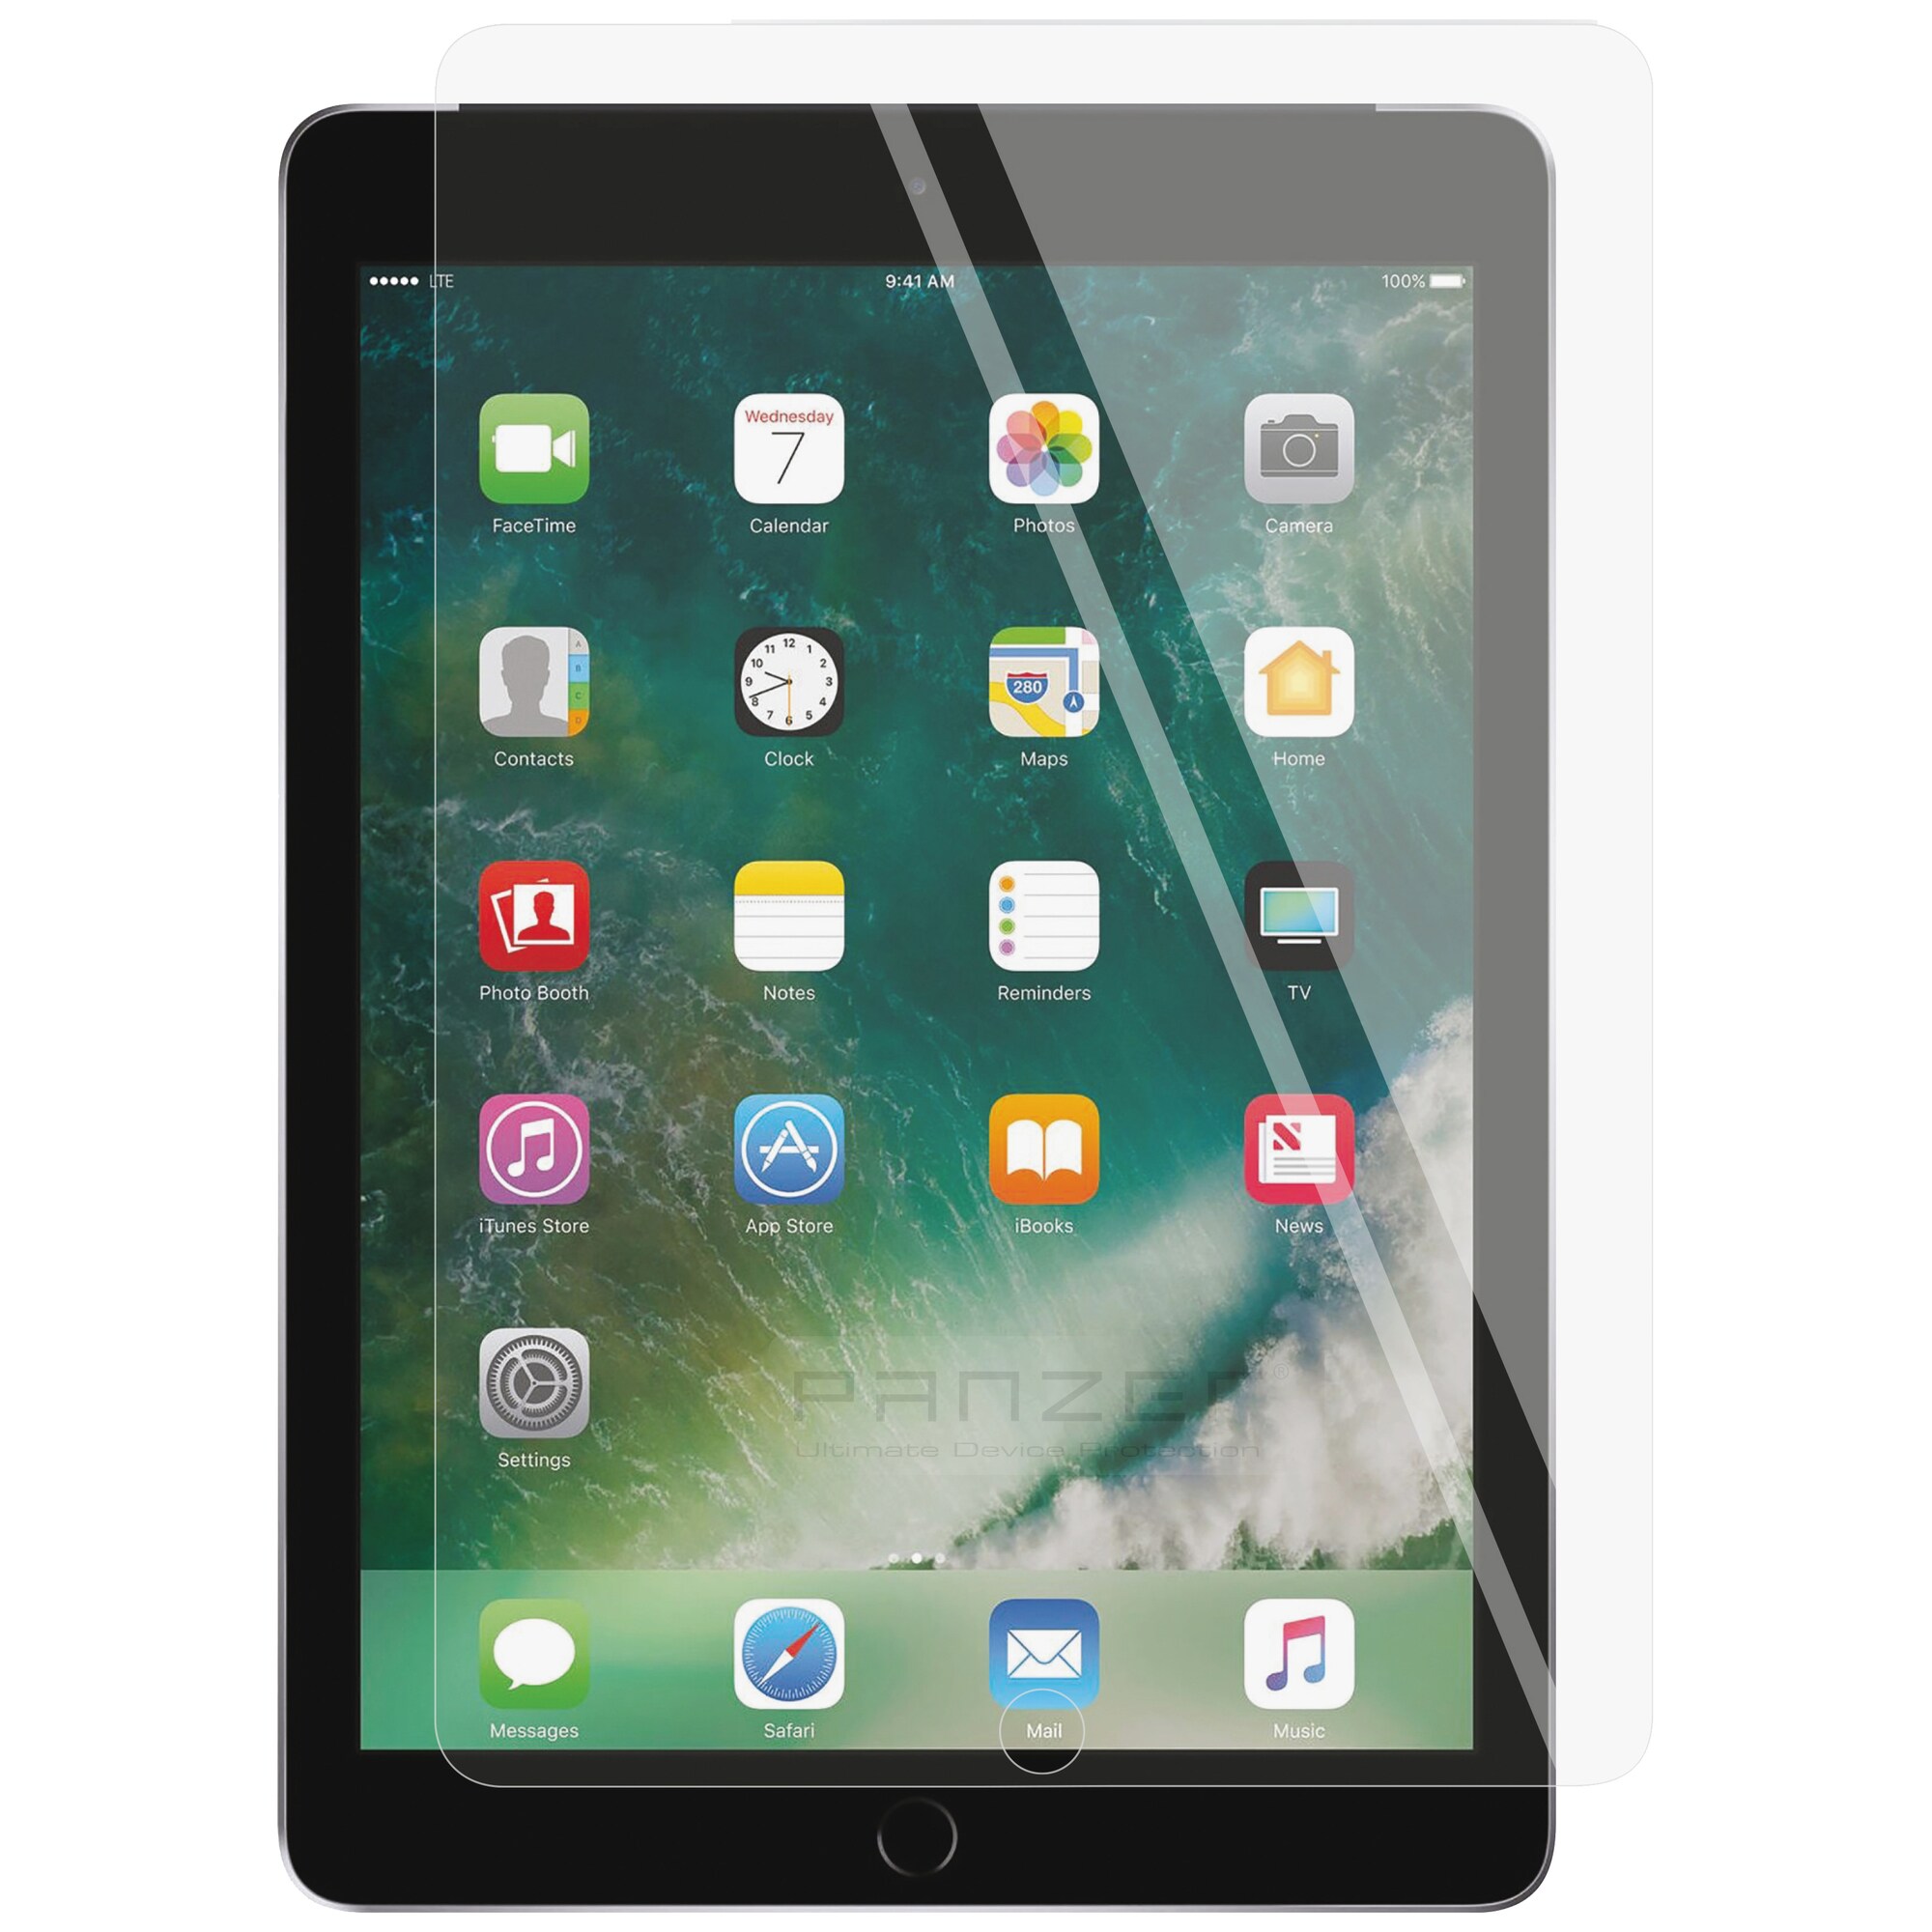 Køb tilbehør til din tablet eller iPad - Elgiganten